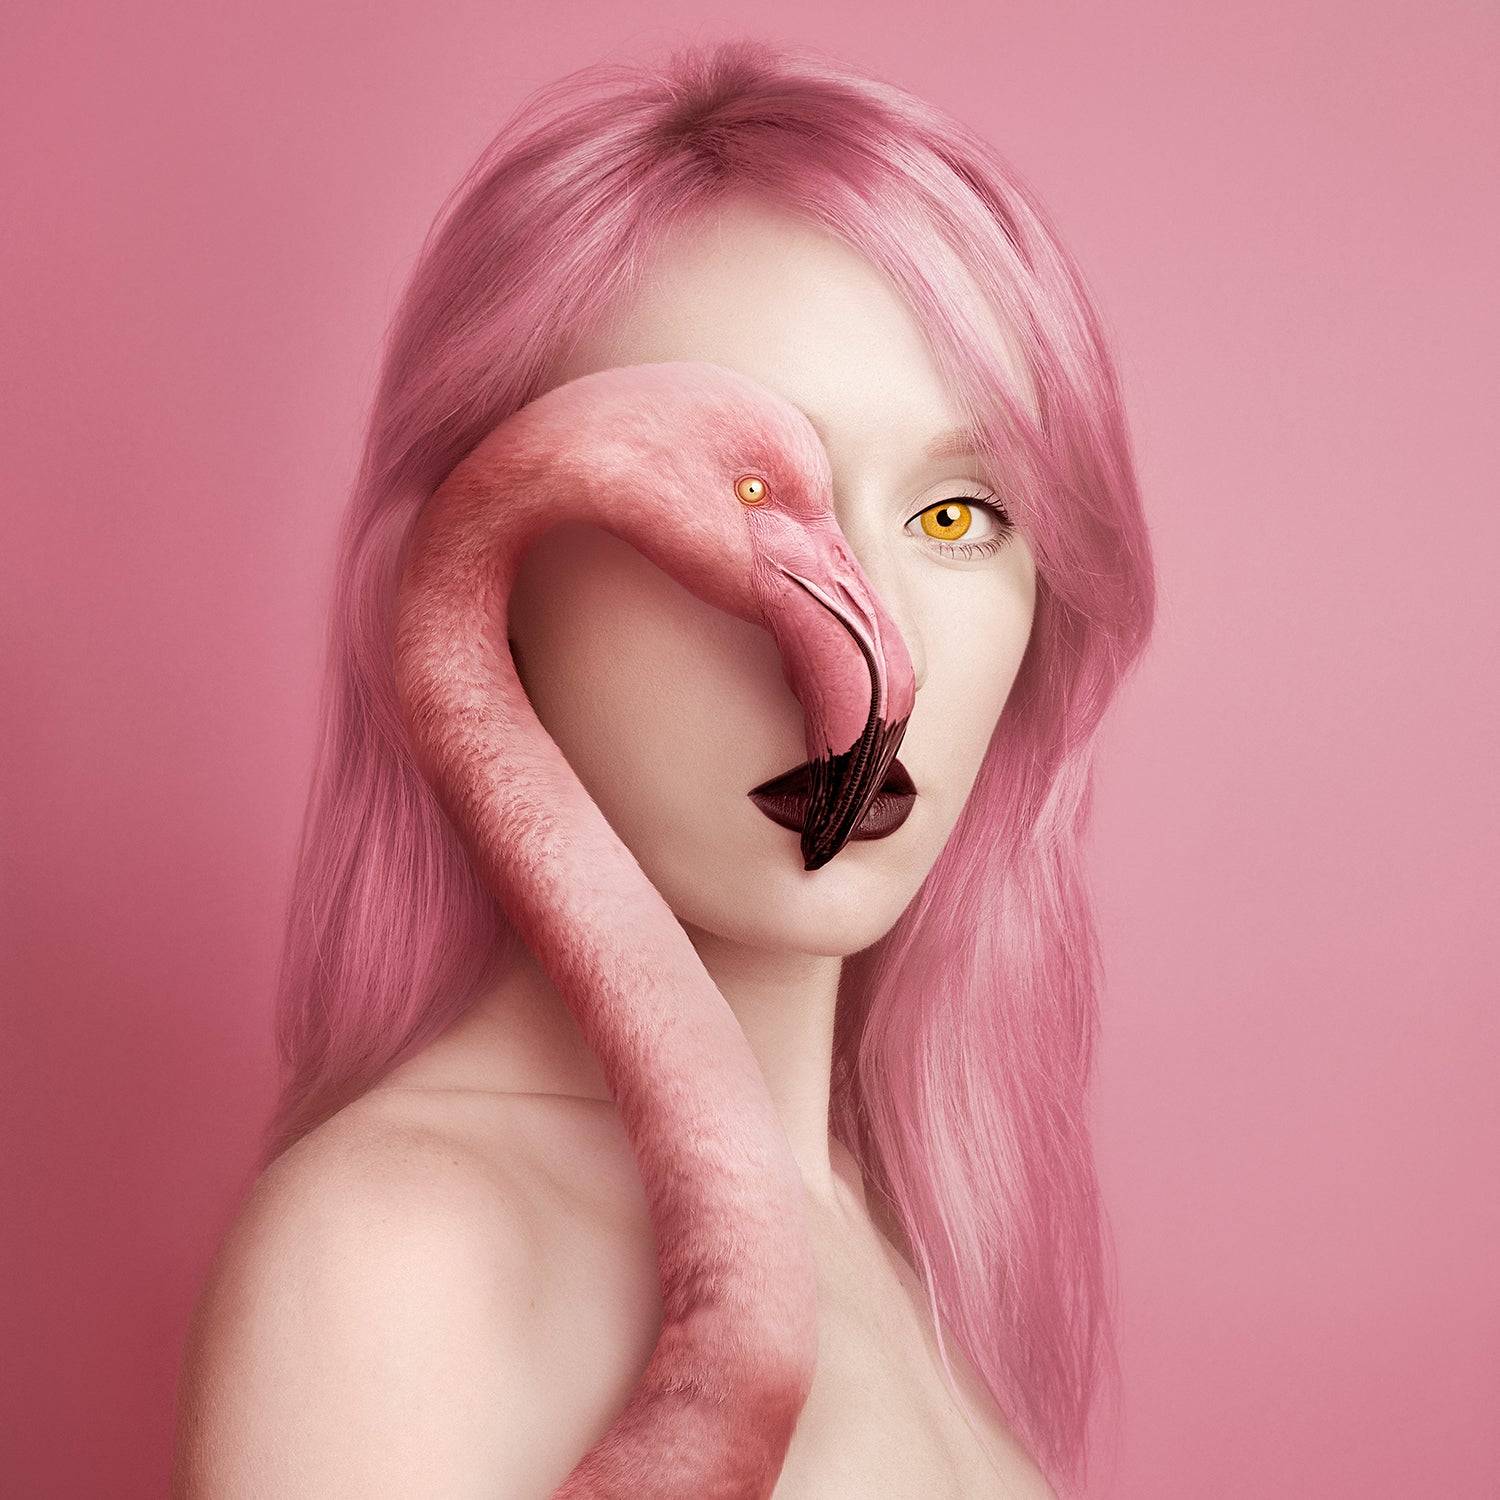 "Animeyed Flamingo" By Flora Borsi, mini edition